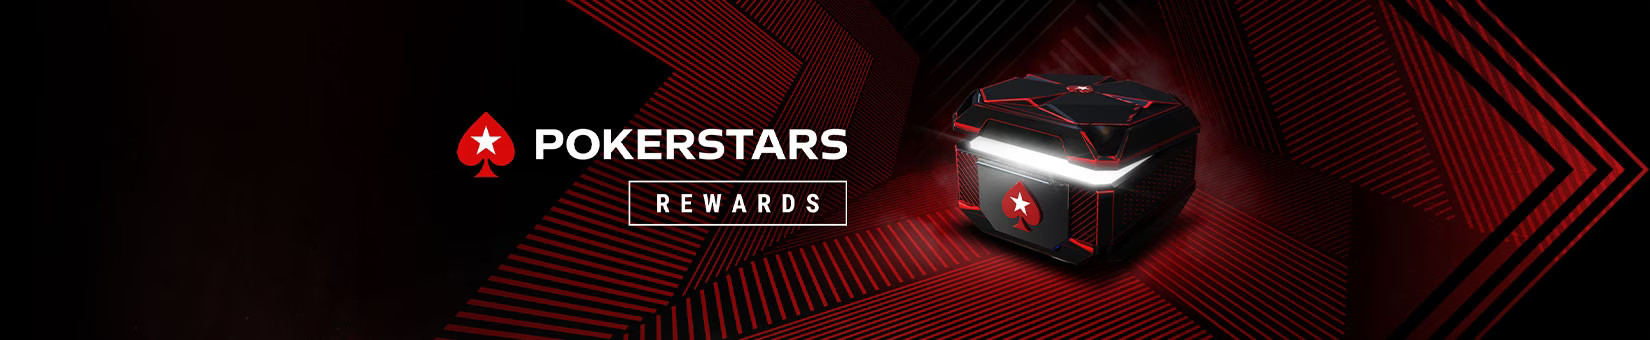 PokerStars Rewards Chest